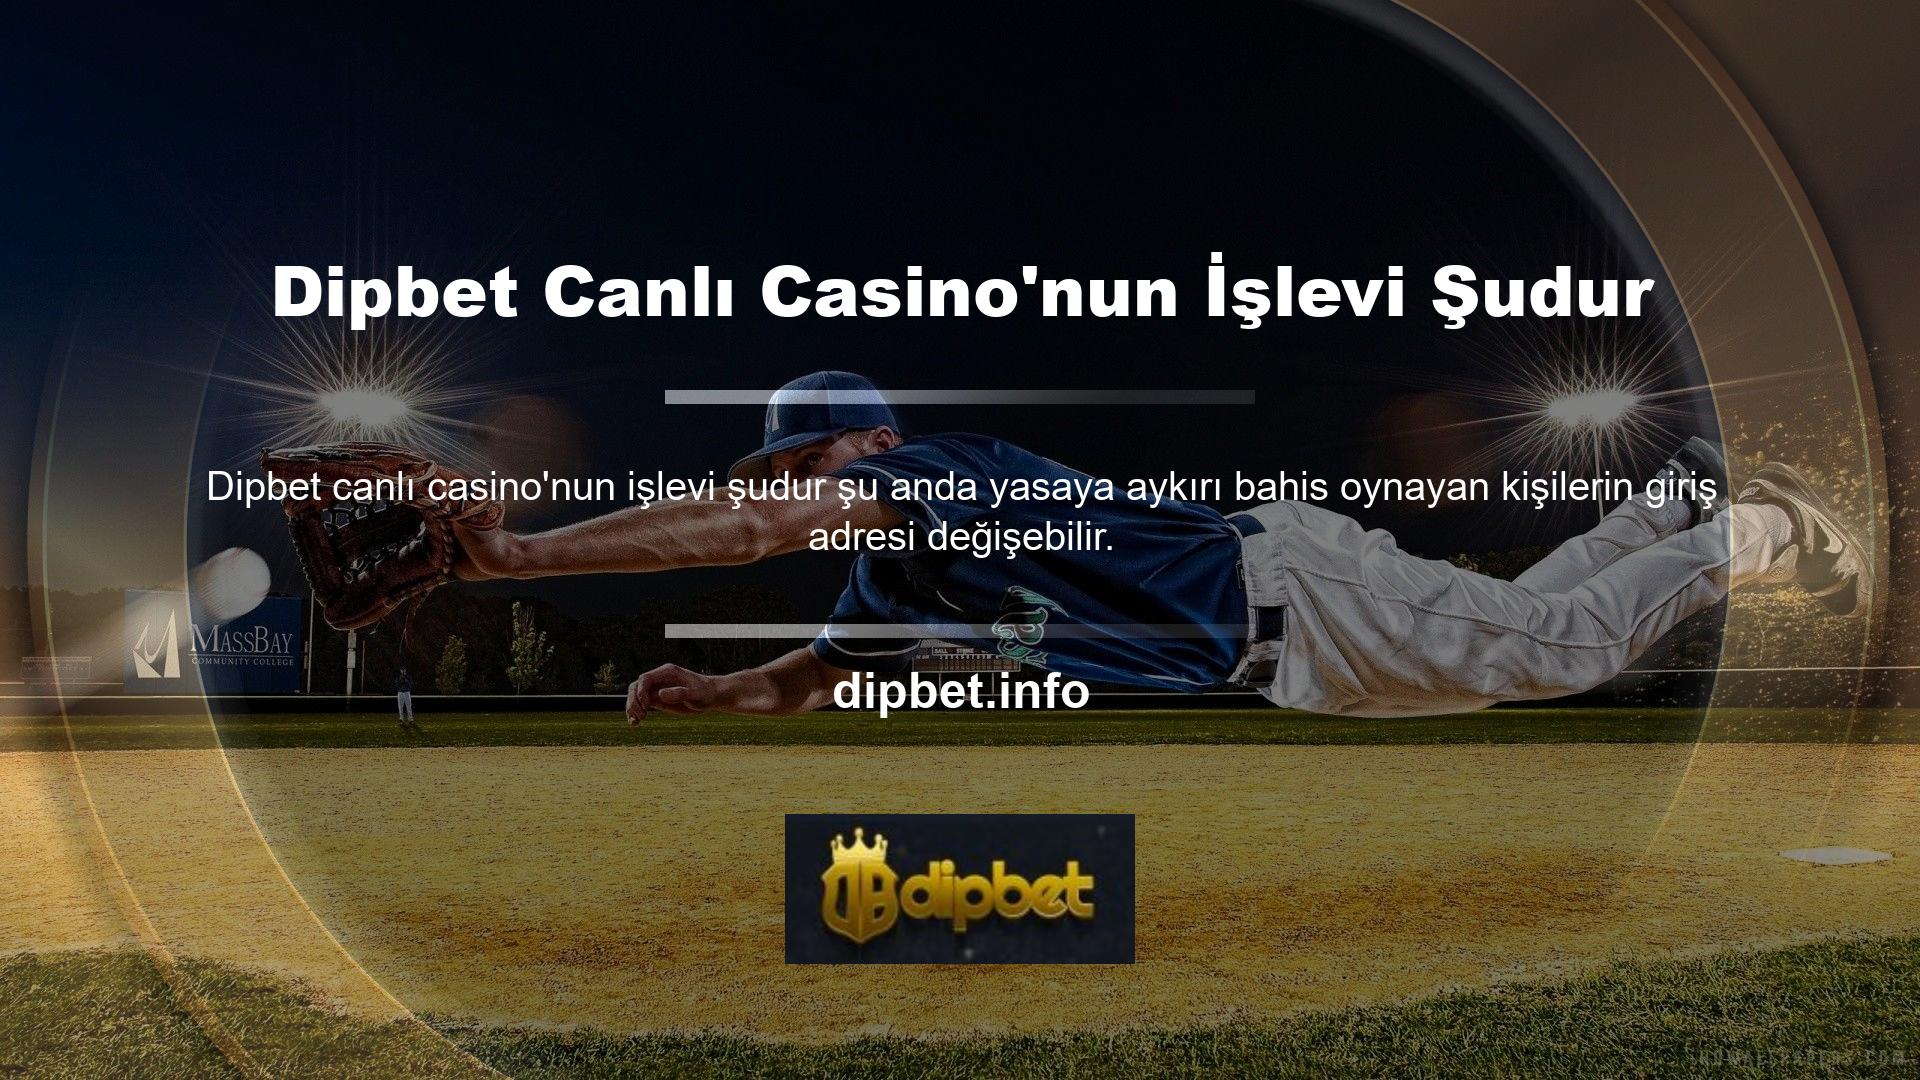 Dipbet canlı casinonun rolü nedir ve son öğenin adresini nasıl bulabilirsiniz? Dipbet son giriş adresi açıldıktan sonra gönderilen kısa mesajla sistemin cep telefonu numarası kayıt altına alındı